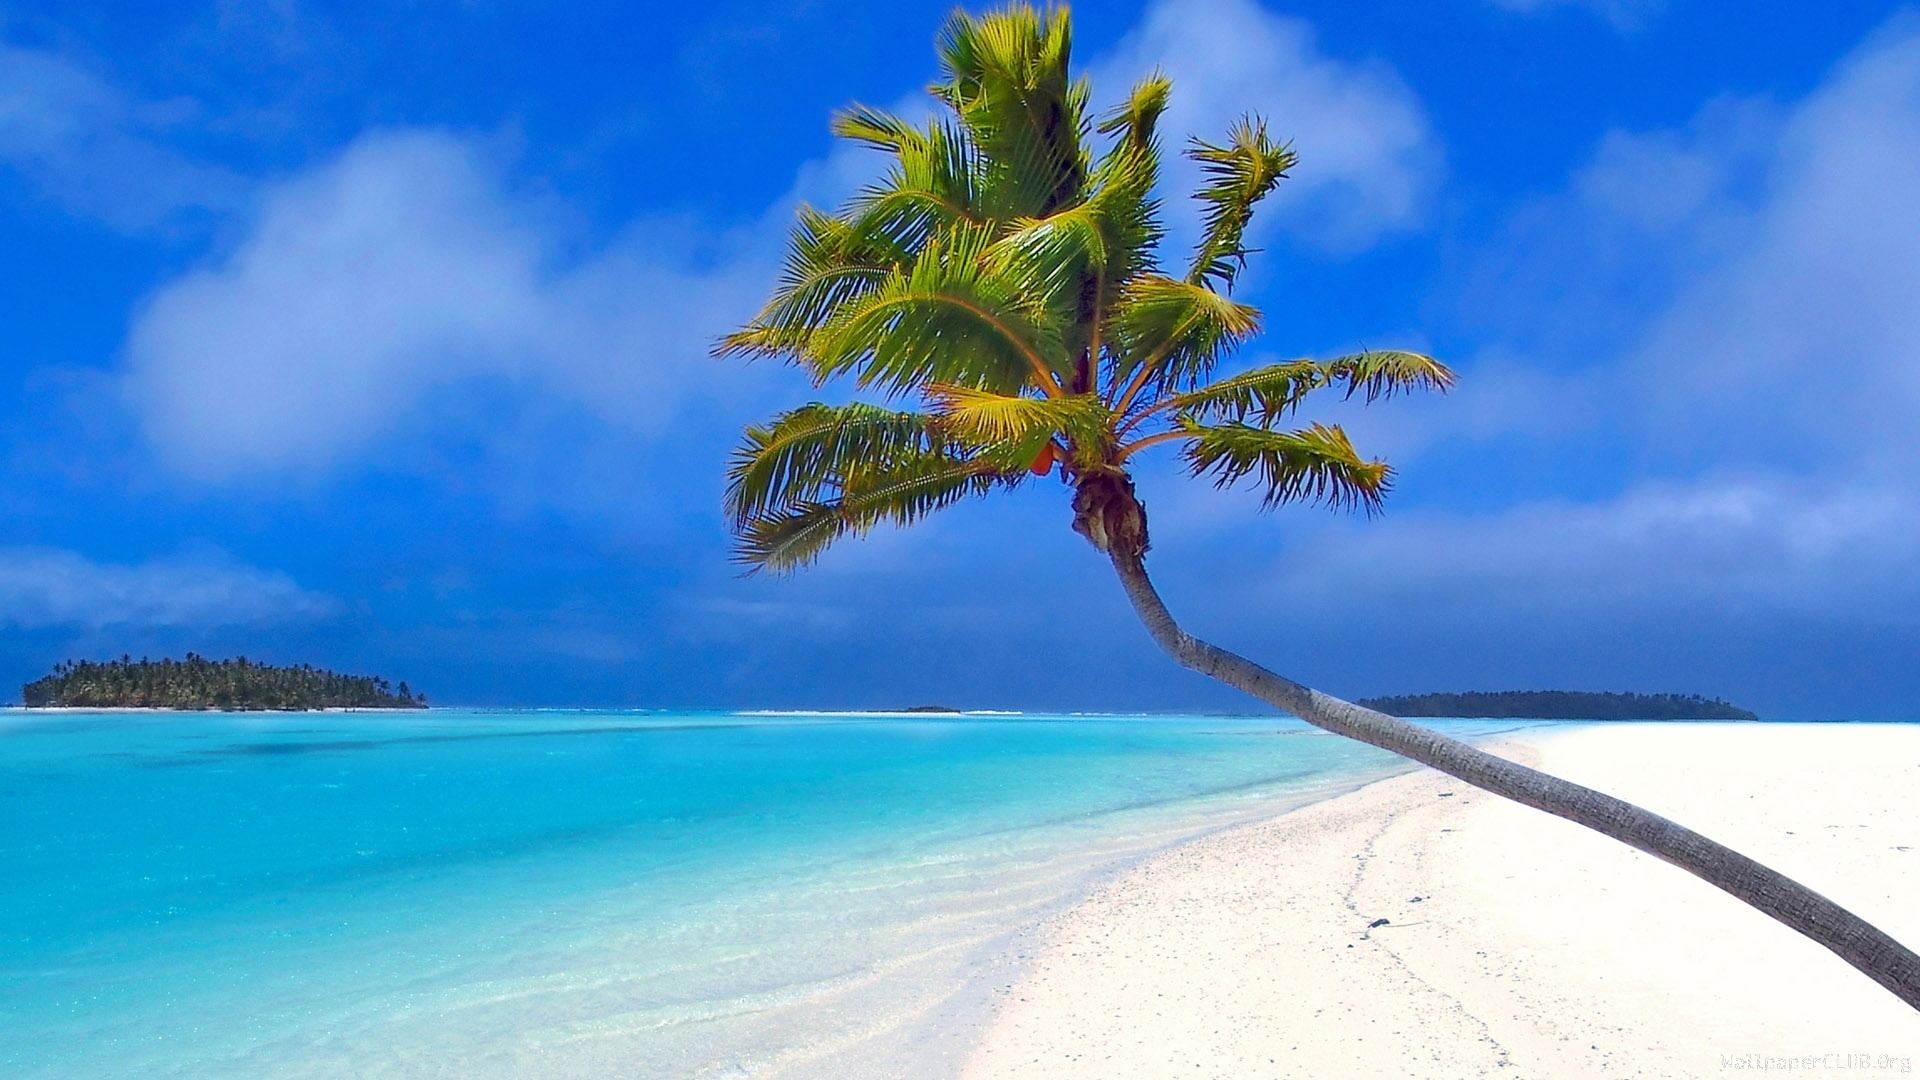 migliori sfondi per la spiaggia,natura,cielo,albero,paesaggio naturale,caraibico